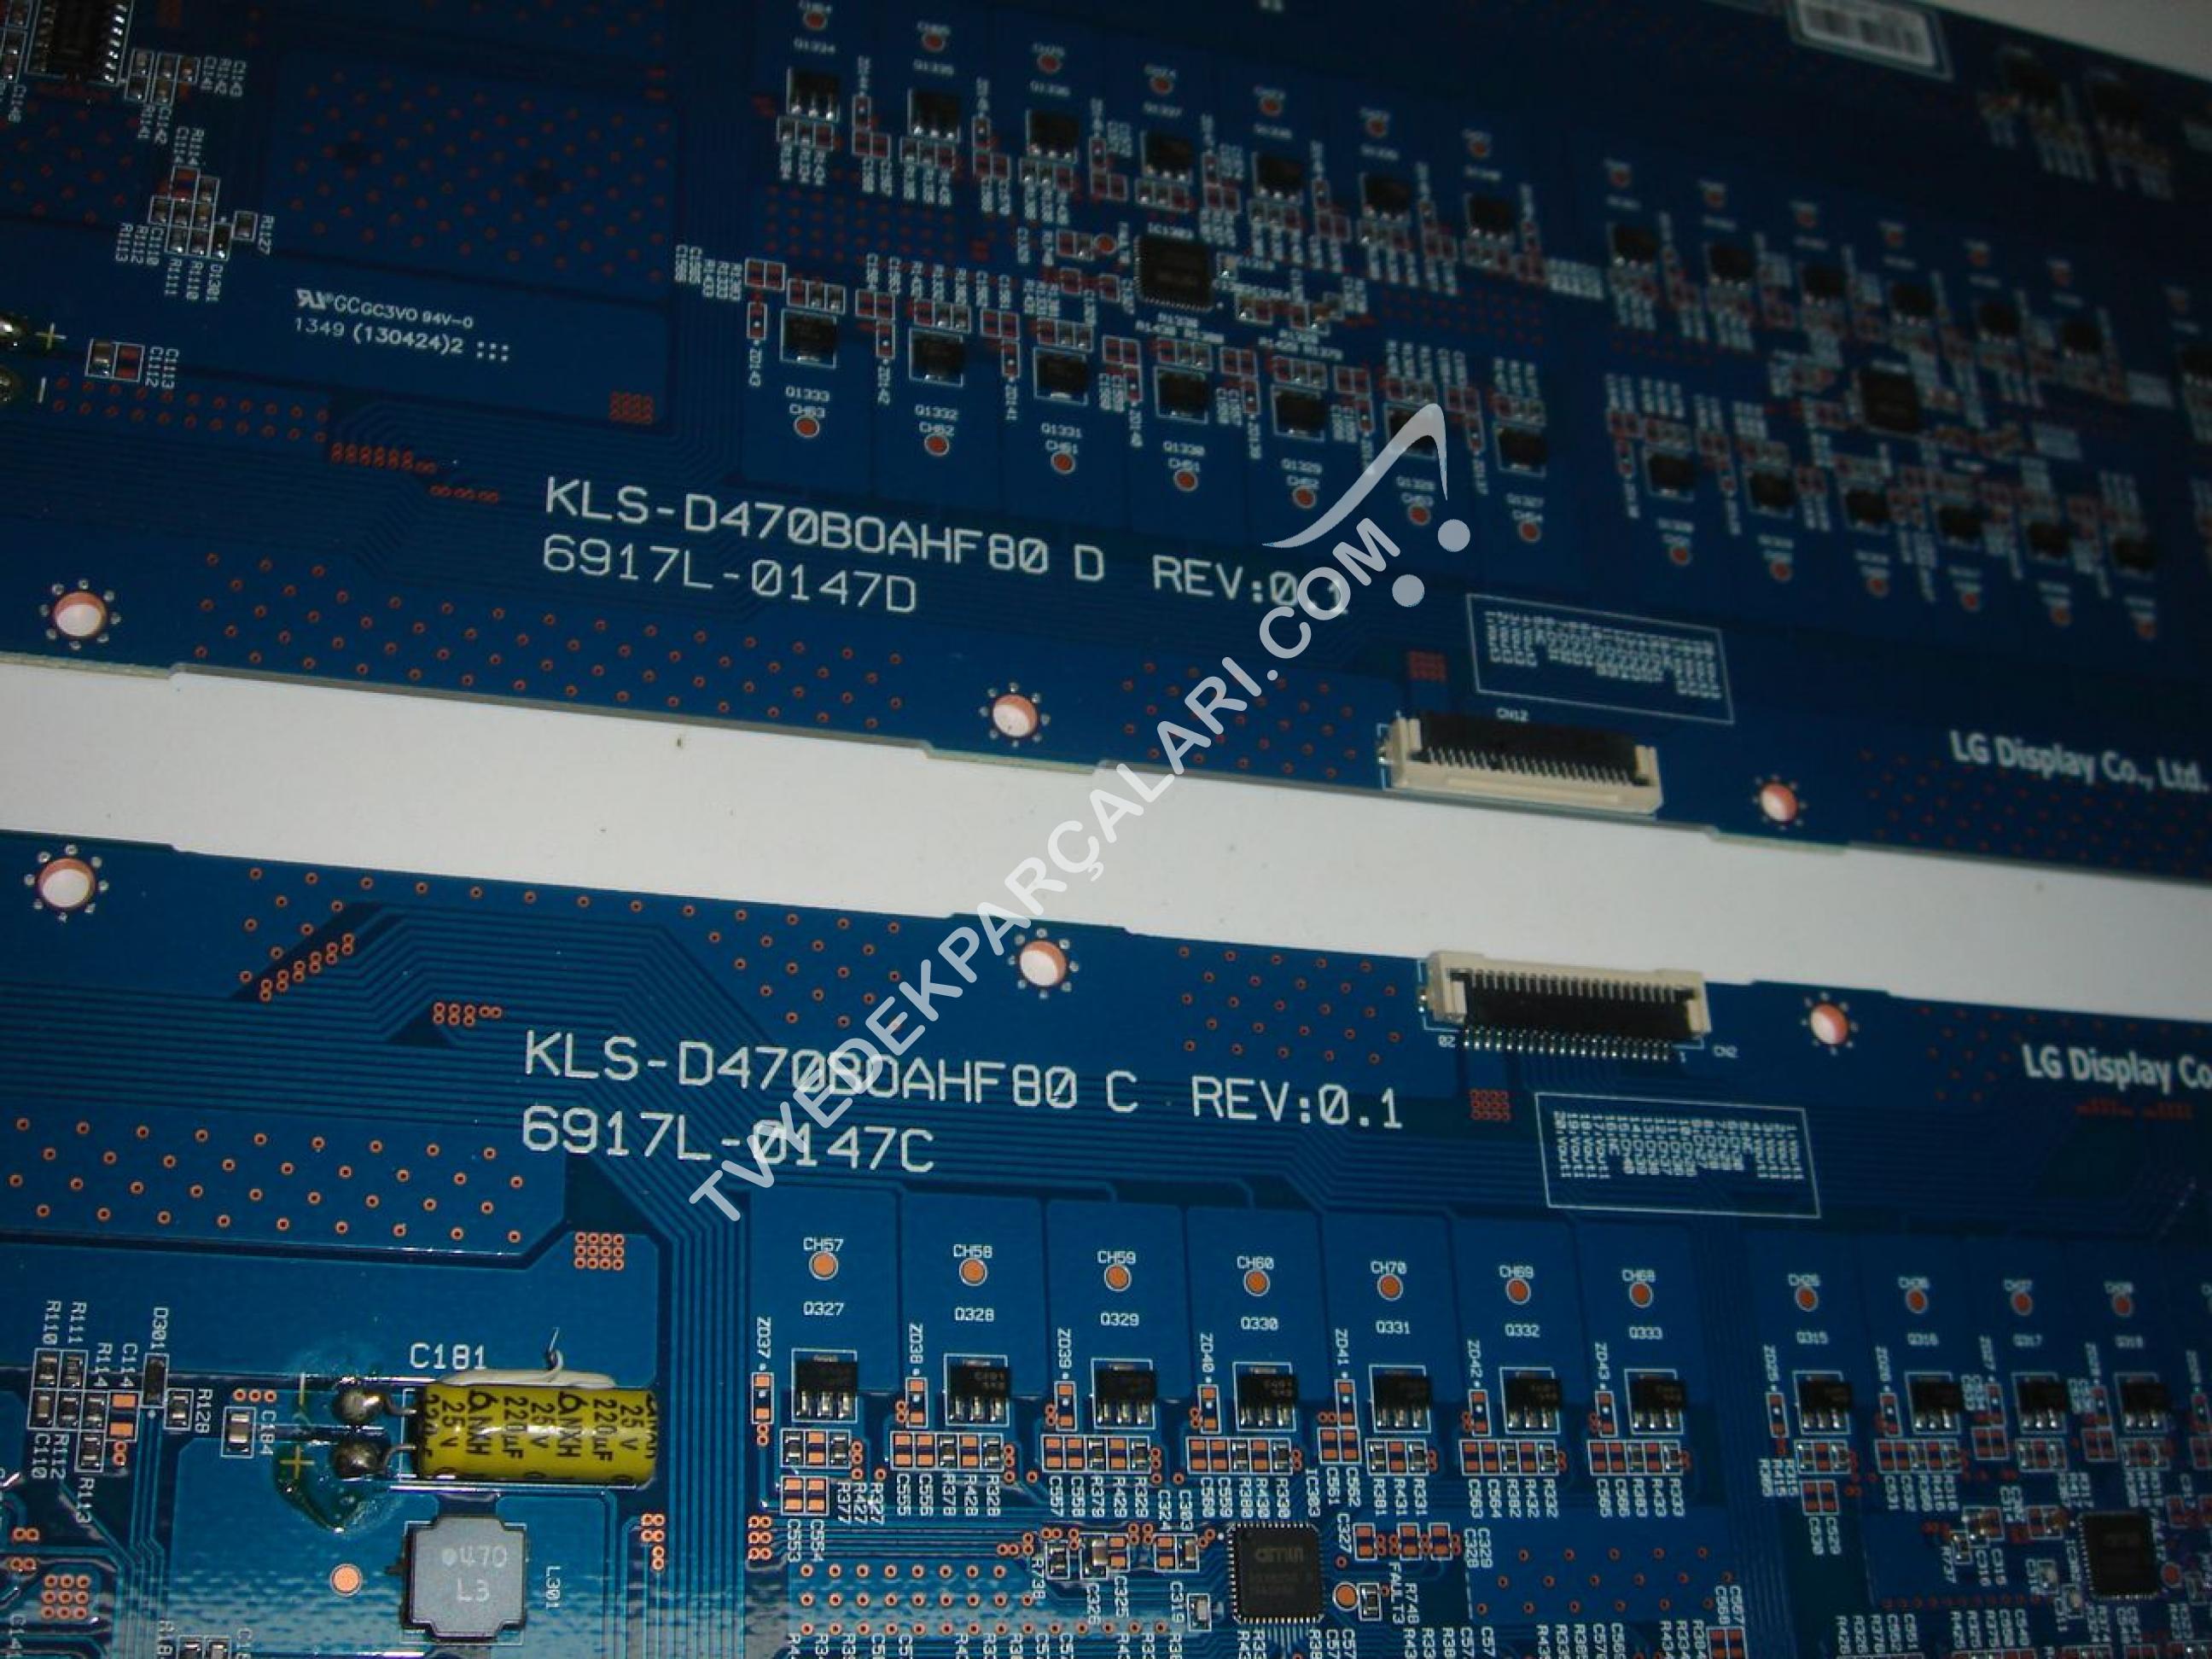 KLS-D470B0AHF80 , 6917L-0147D , 6917L-0147C , 47WV50MS LED DRİVER BOARD